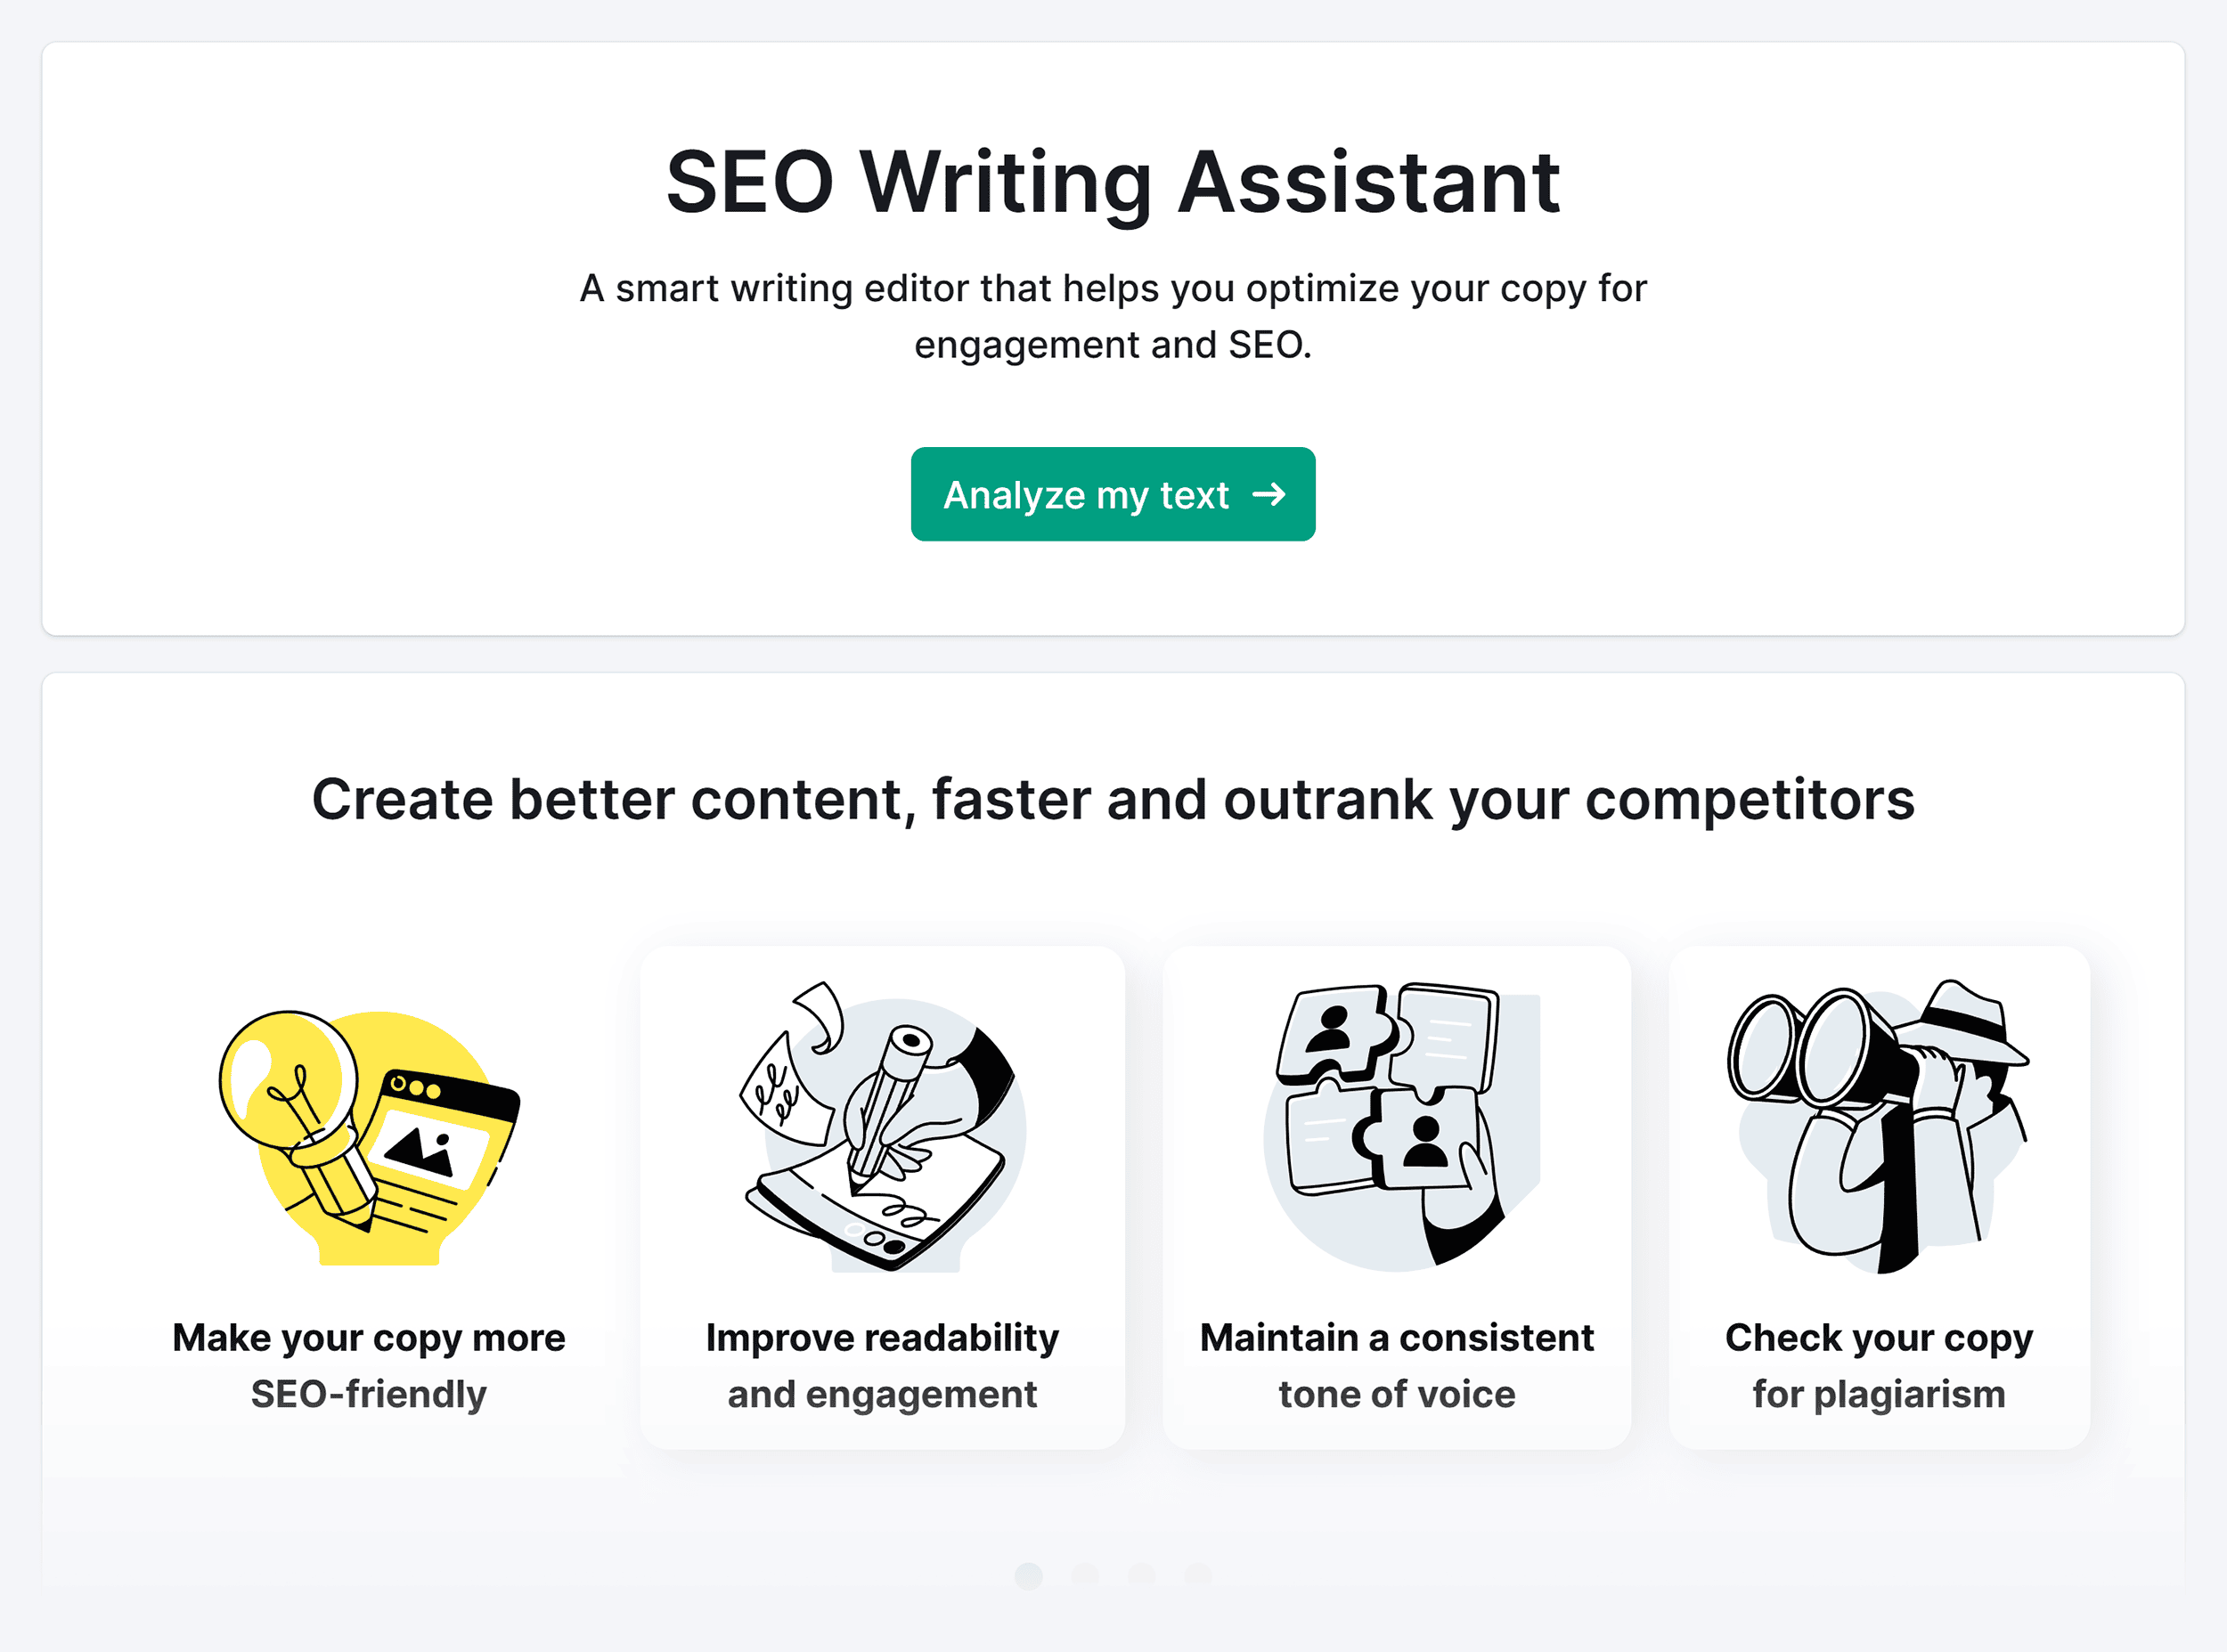 Semrush – SEO Writing Assistant